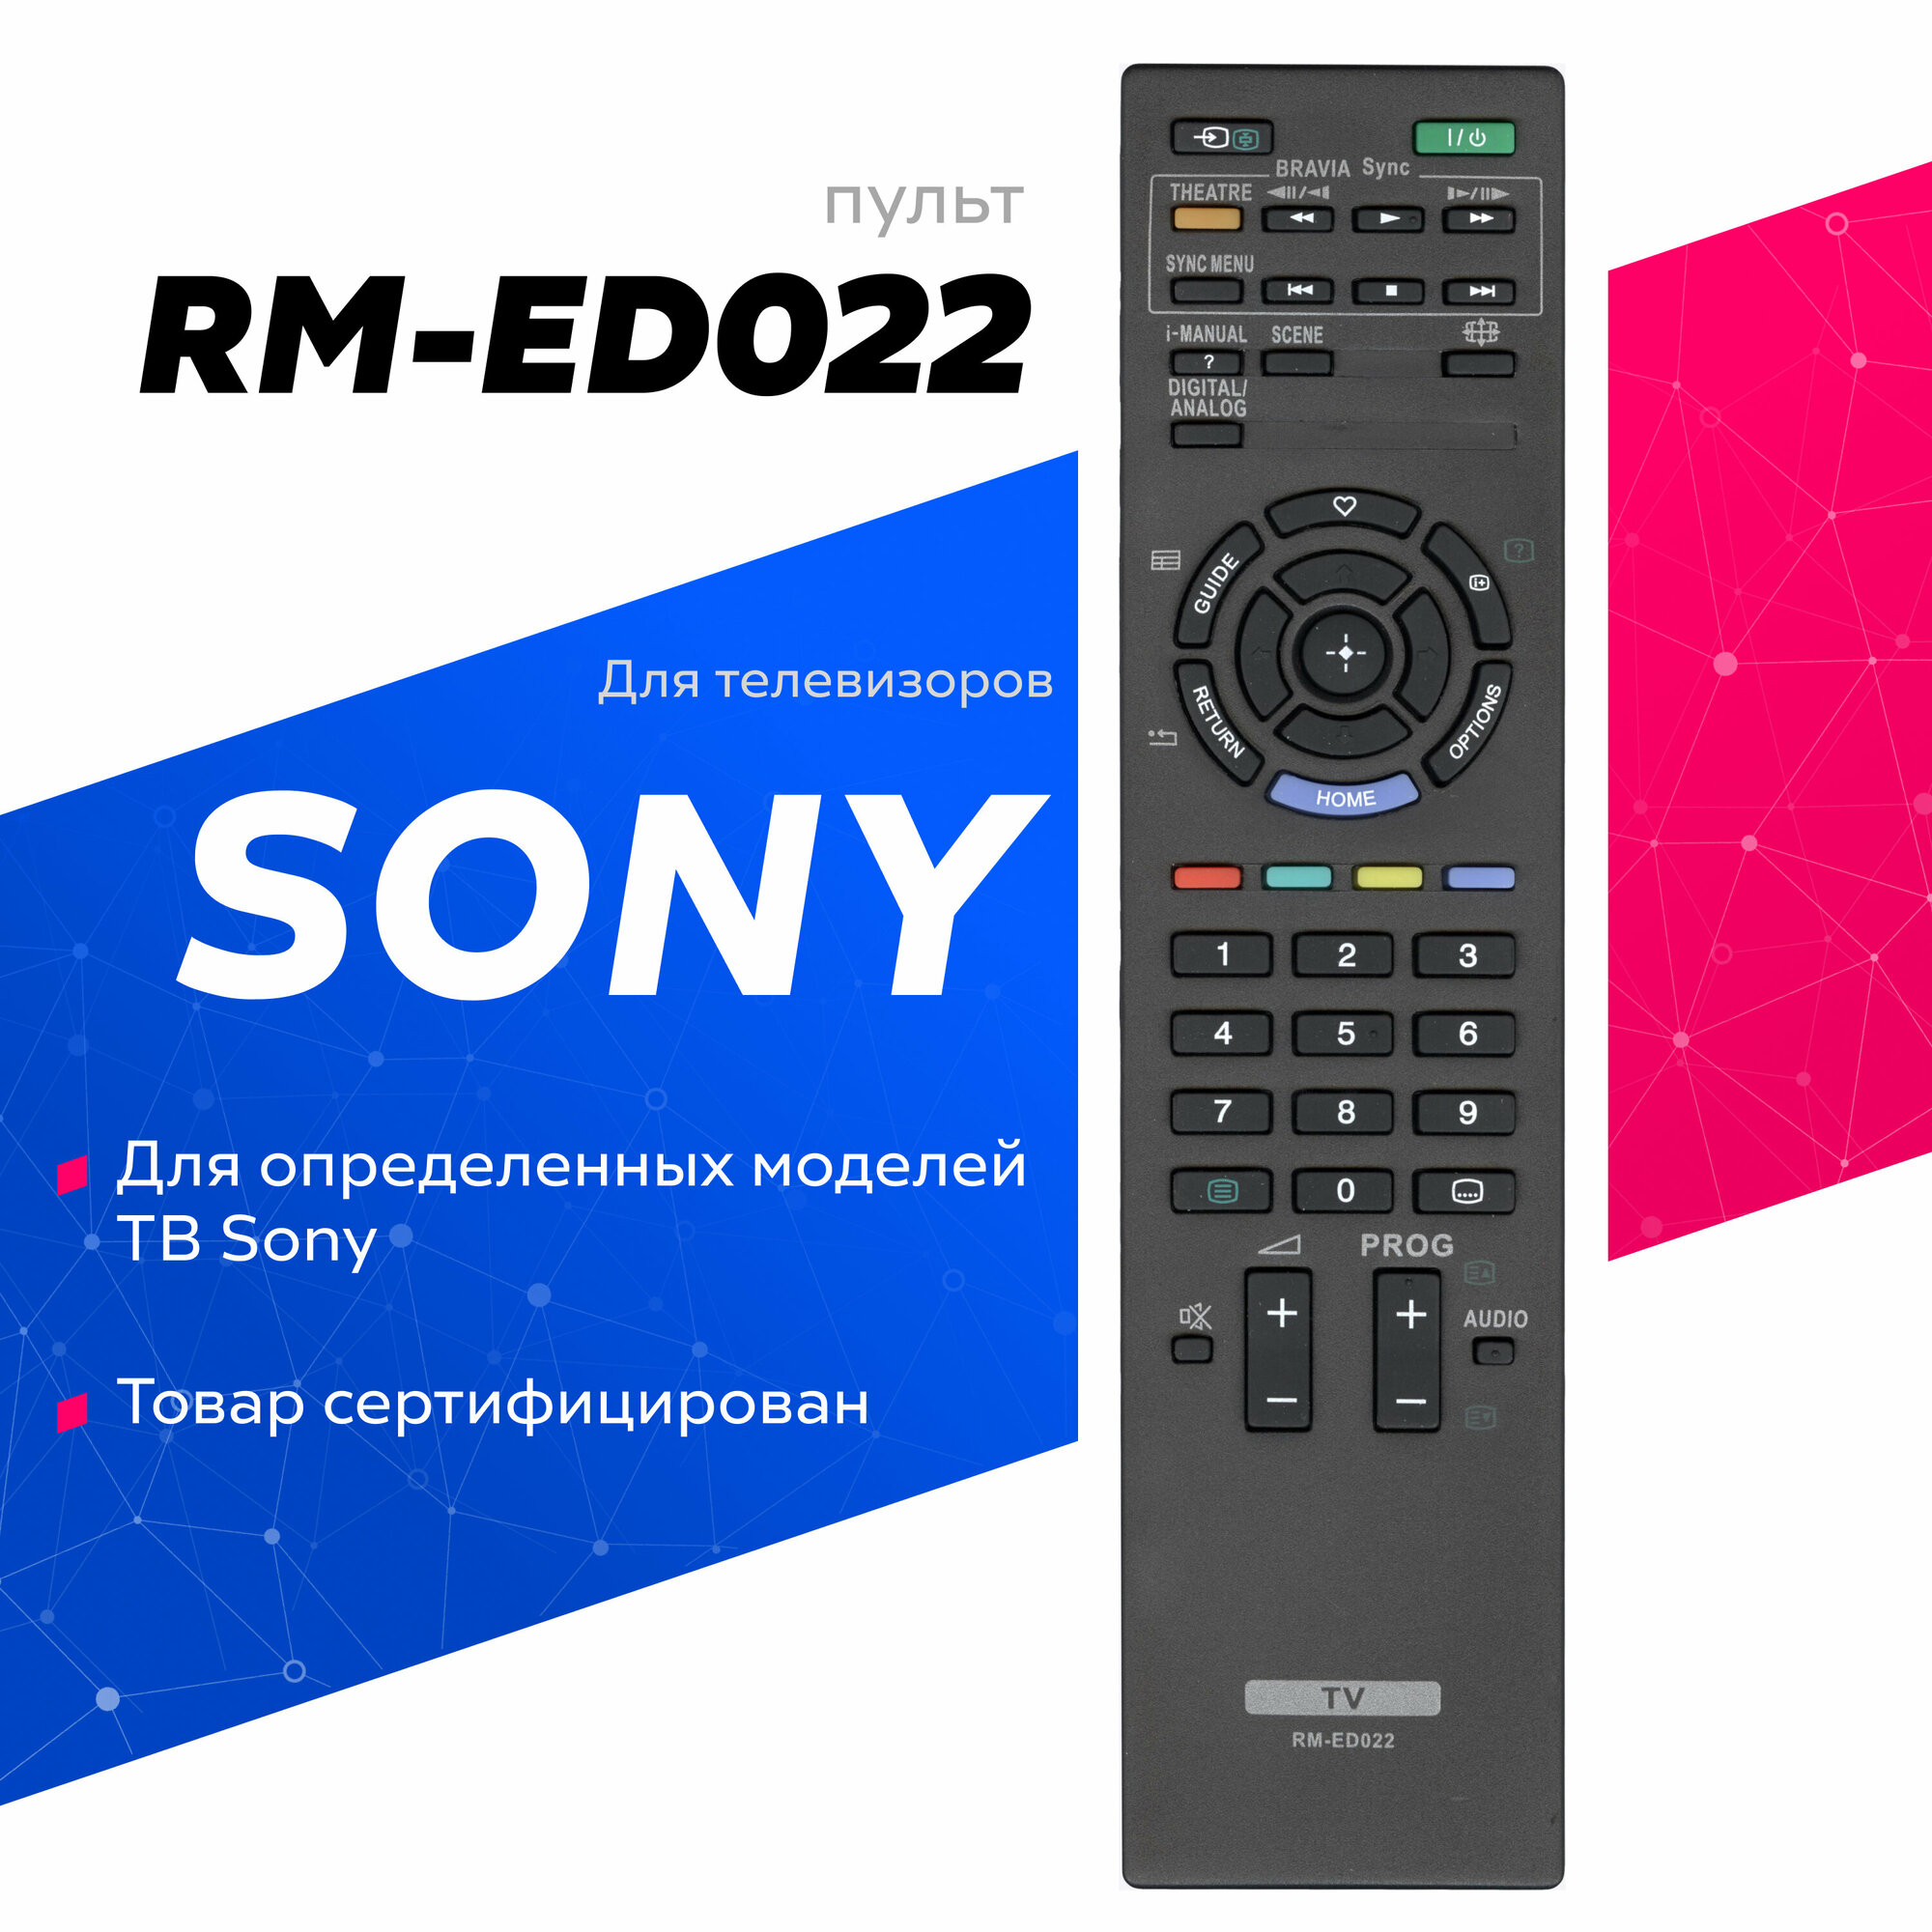 Пульт ДУ Huayu RM-ED022 для телевизоров Sony KDL-40EX402/KDL-26EX302/KDL-32BX302/KDL-40BX402/KDL-32EX600R/KDL-22EX300, черный